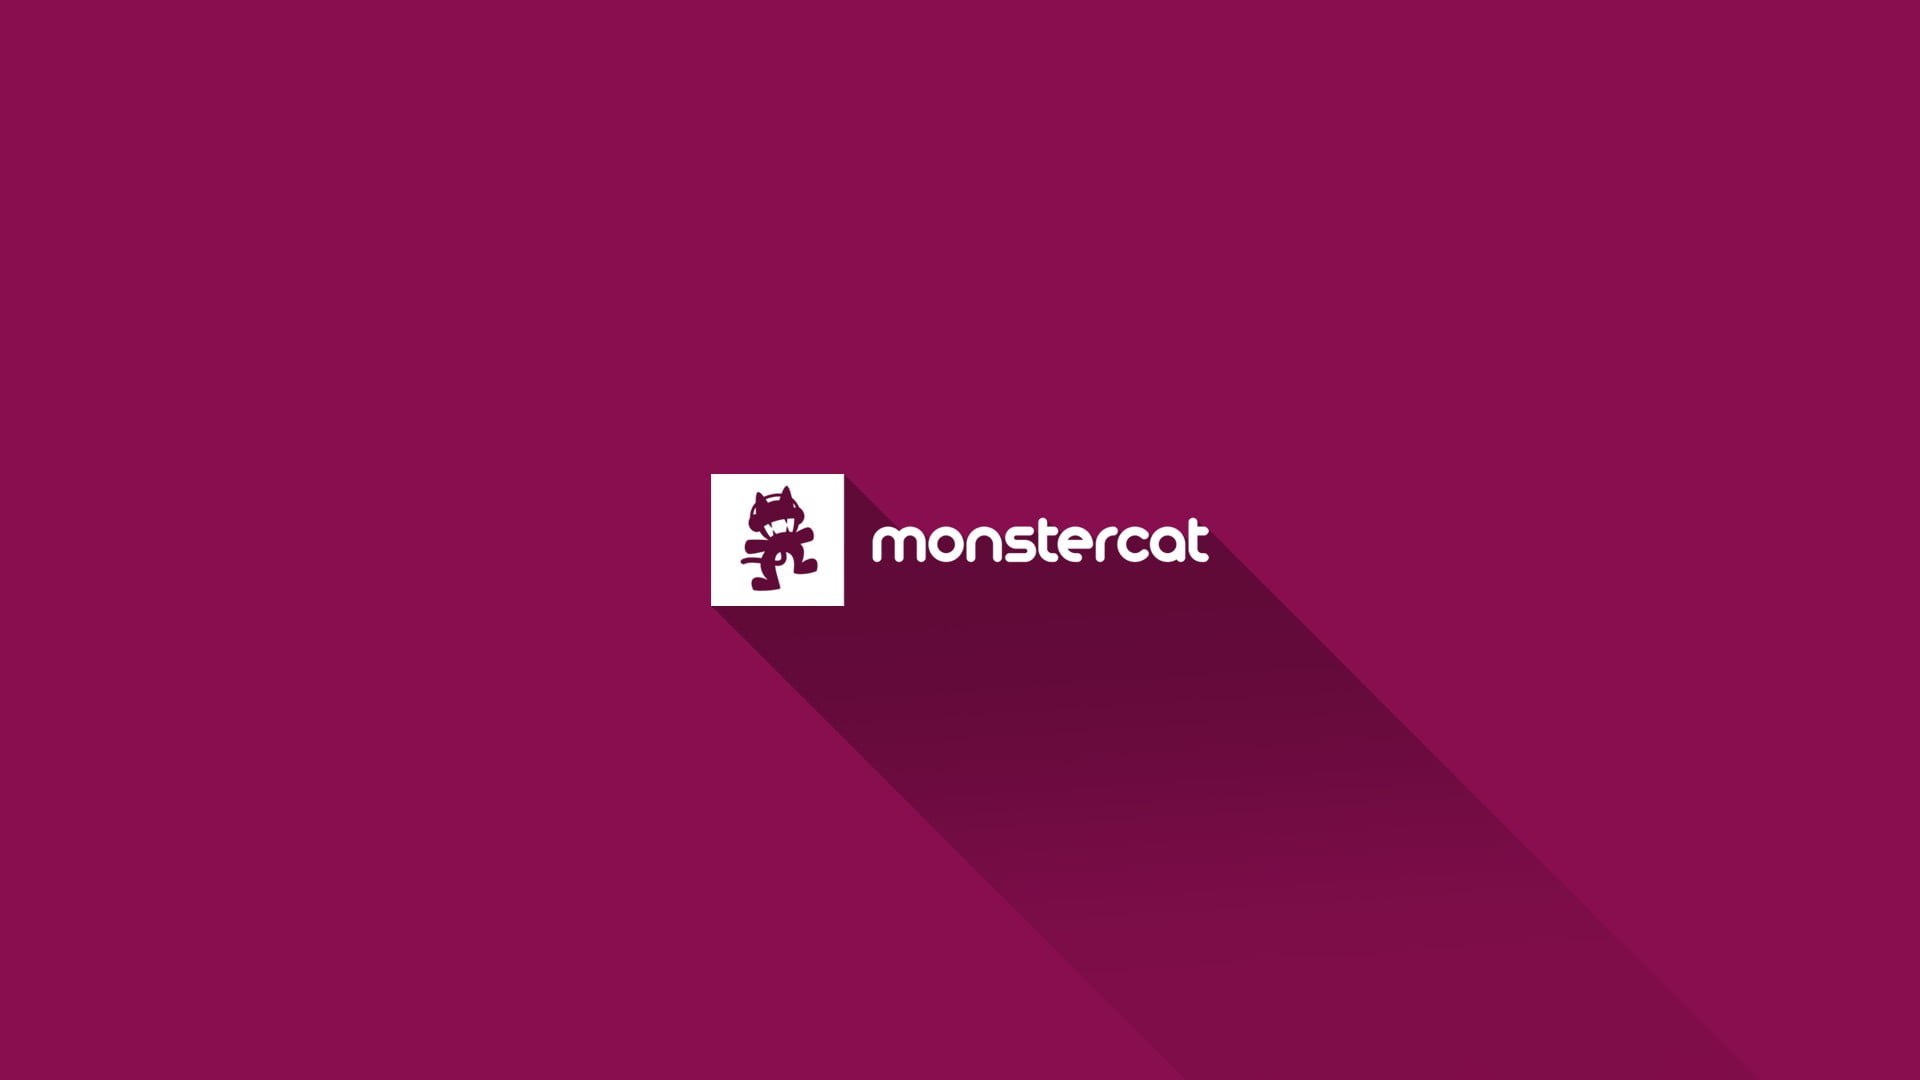 Monstercat logo, Monstercat, simple background